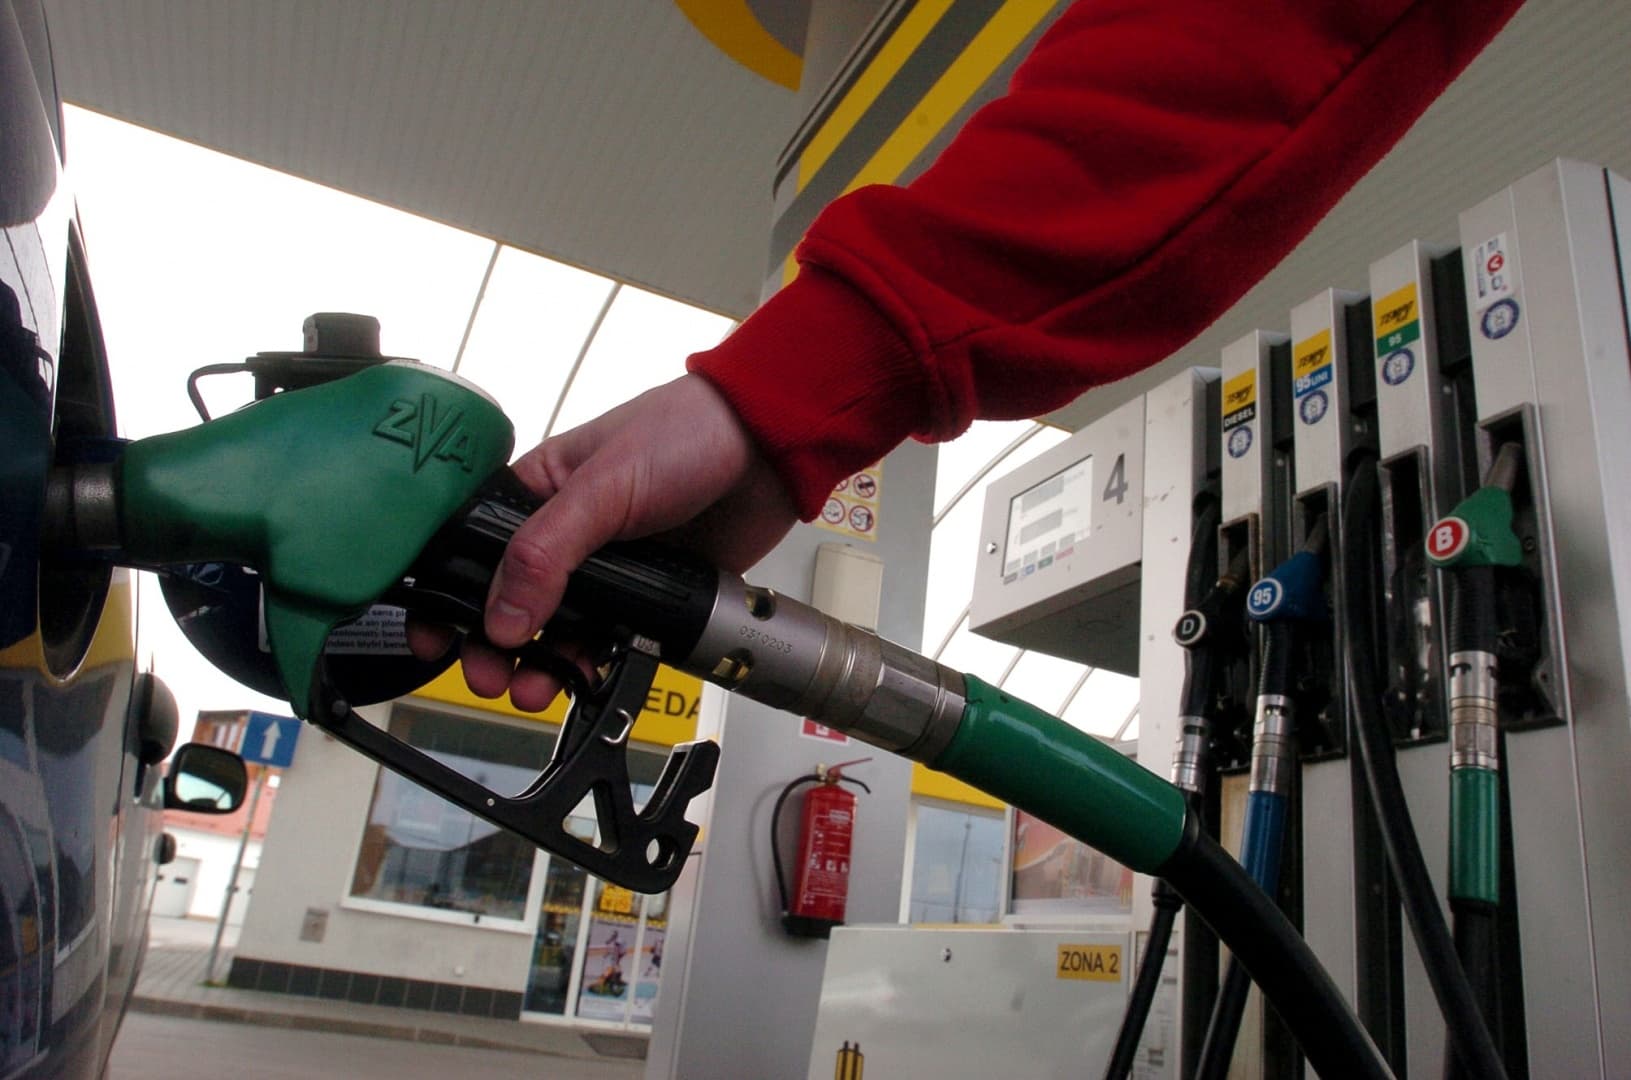 Januártól újféle módon jelölik az üzemanyagot a benzinkutakon